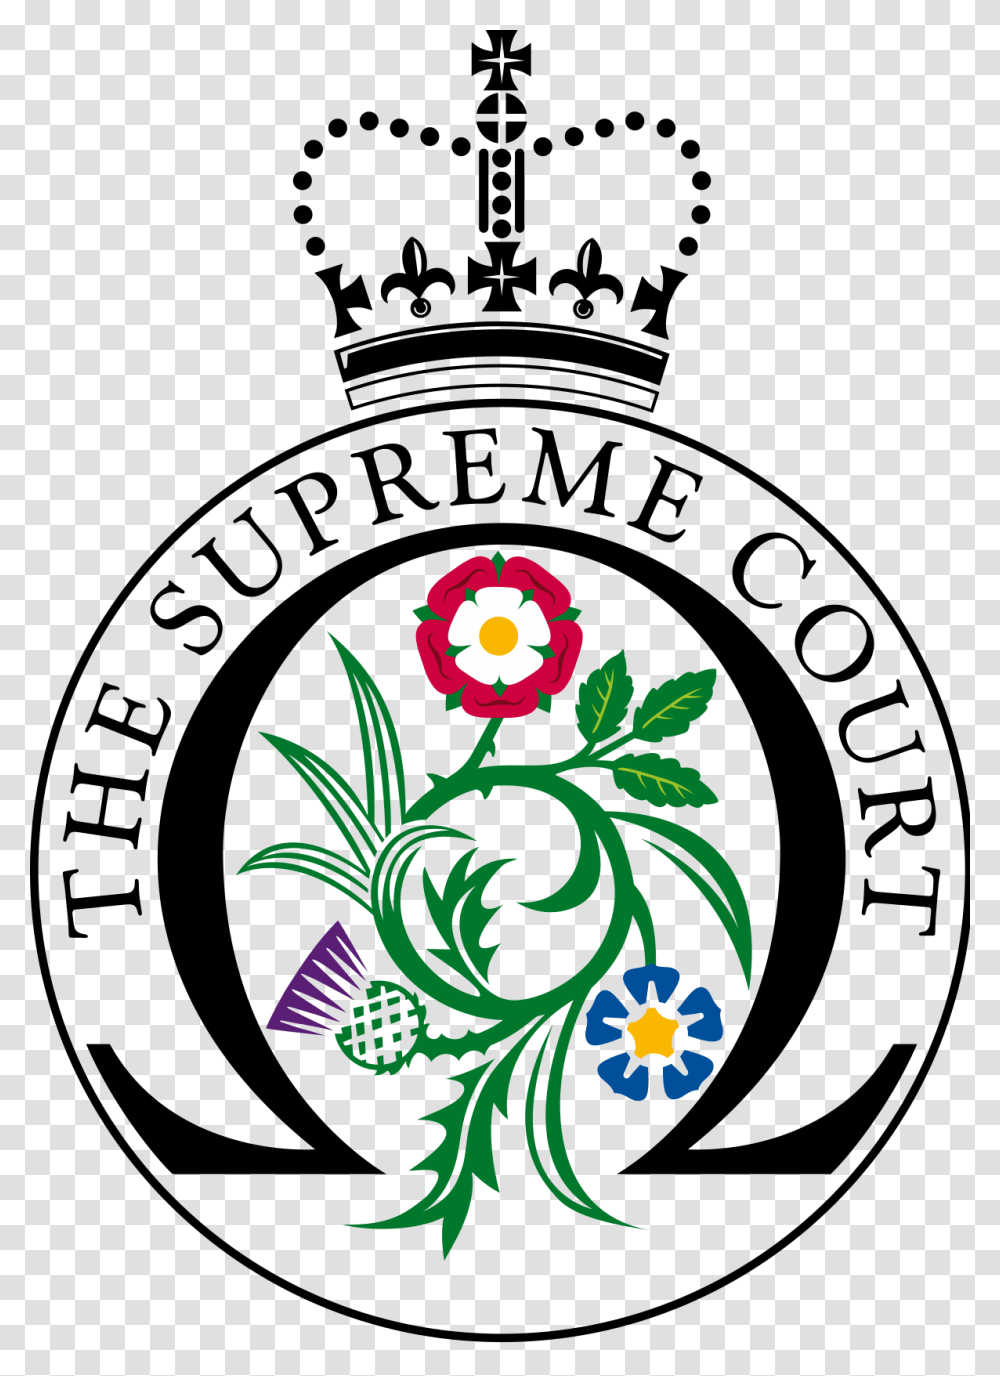 Supreme Court Justice S Clip Art, Logo, Trademark, Badge Transparent Png